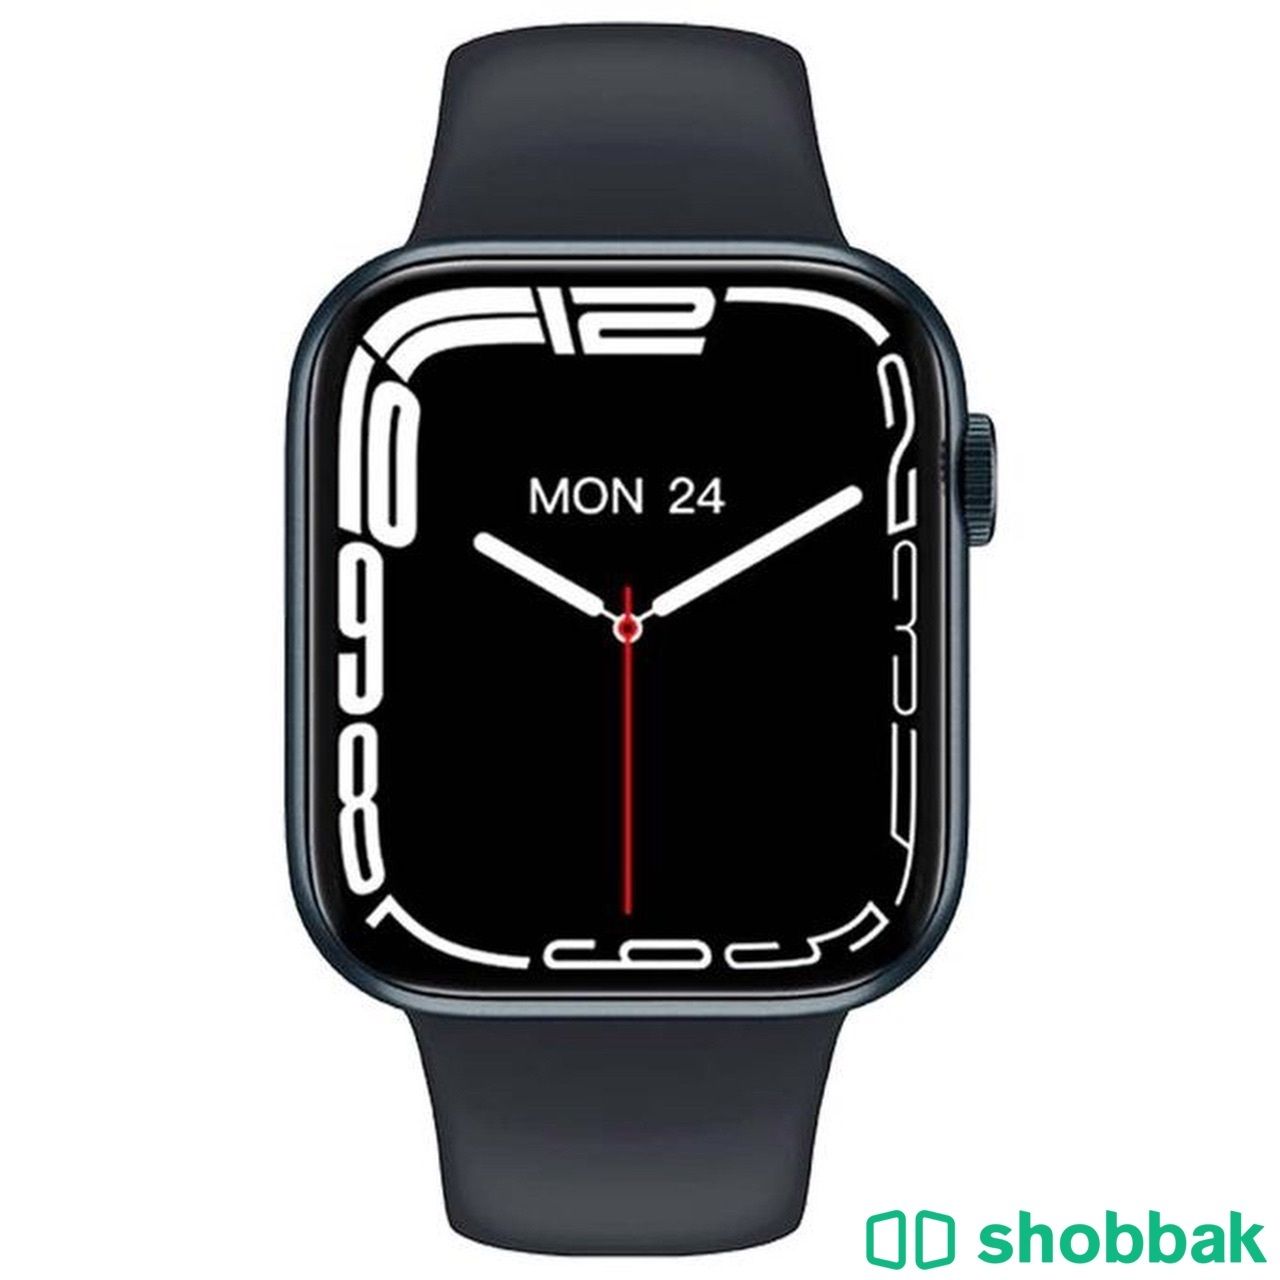 Apple watch HW57pro Shobbak Saudi Arabia